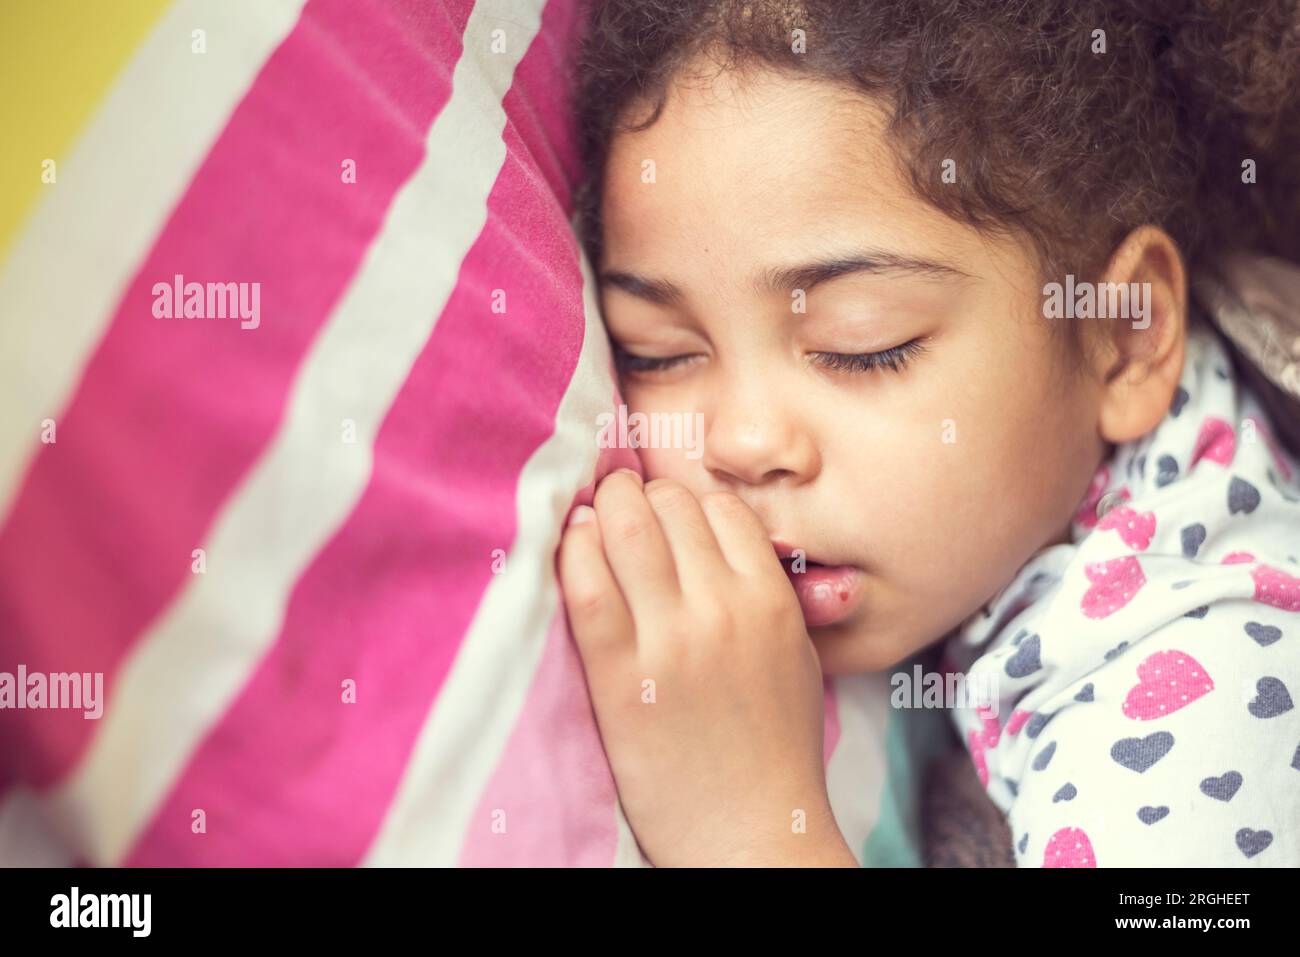 Enfant noir dormant dans la chambre. Jeune fille fatiguée faisant une sieste et se reposant, se brisant et un développement sain de l'enfance Banque D'Images